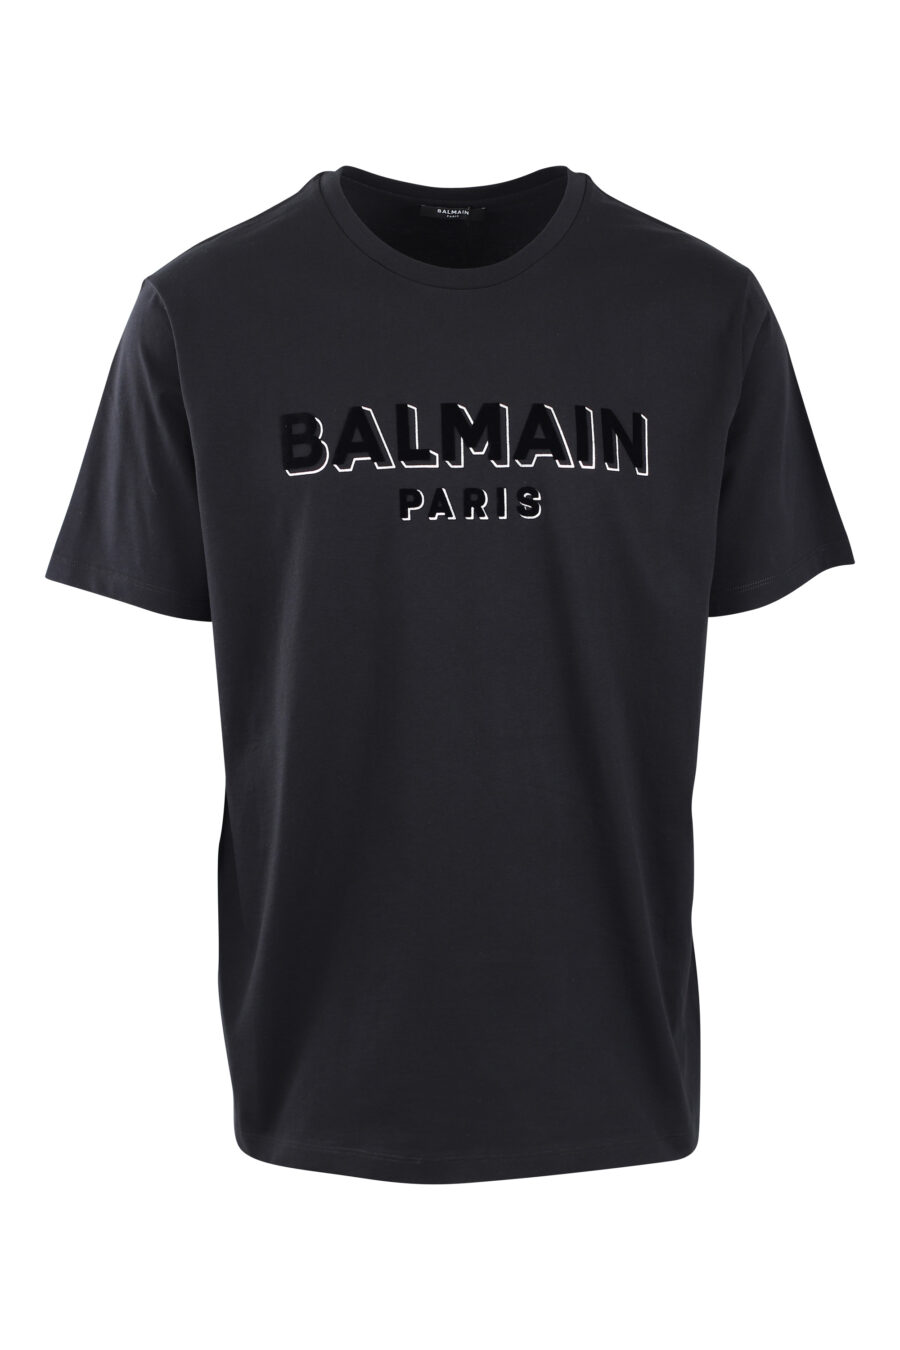 T-shirt preta com maxilogo de veludo preto com prata - IMG 2585